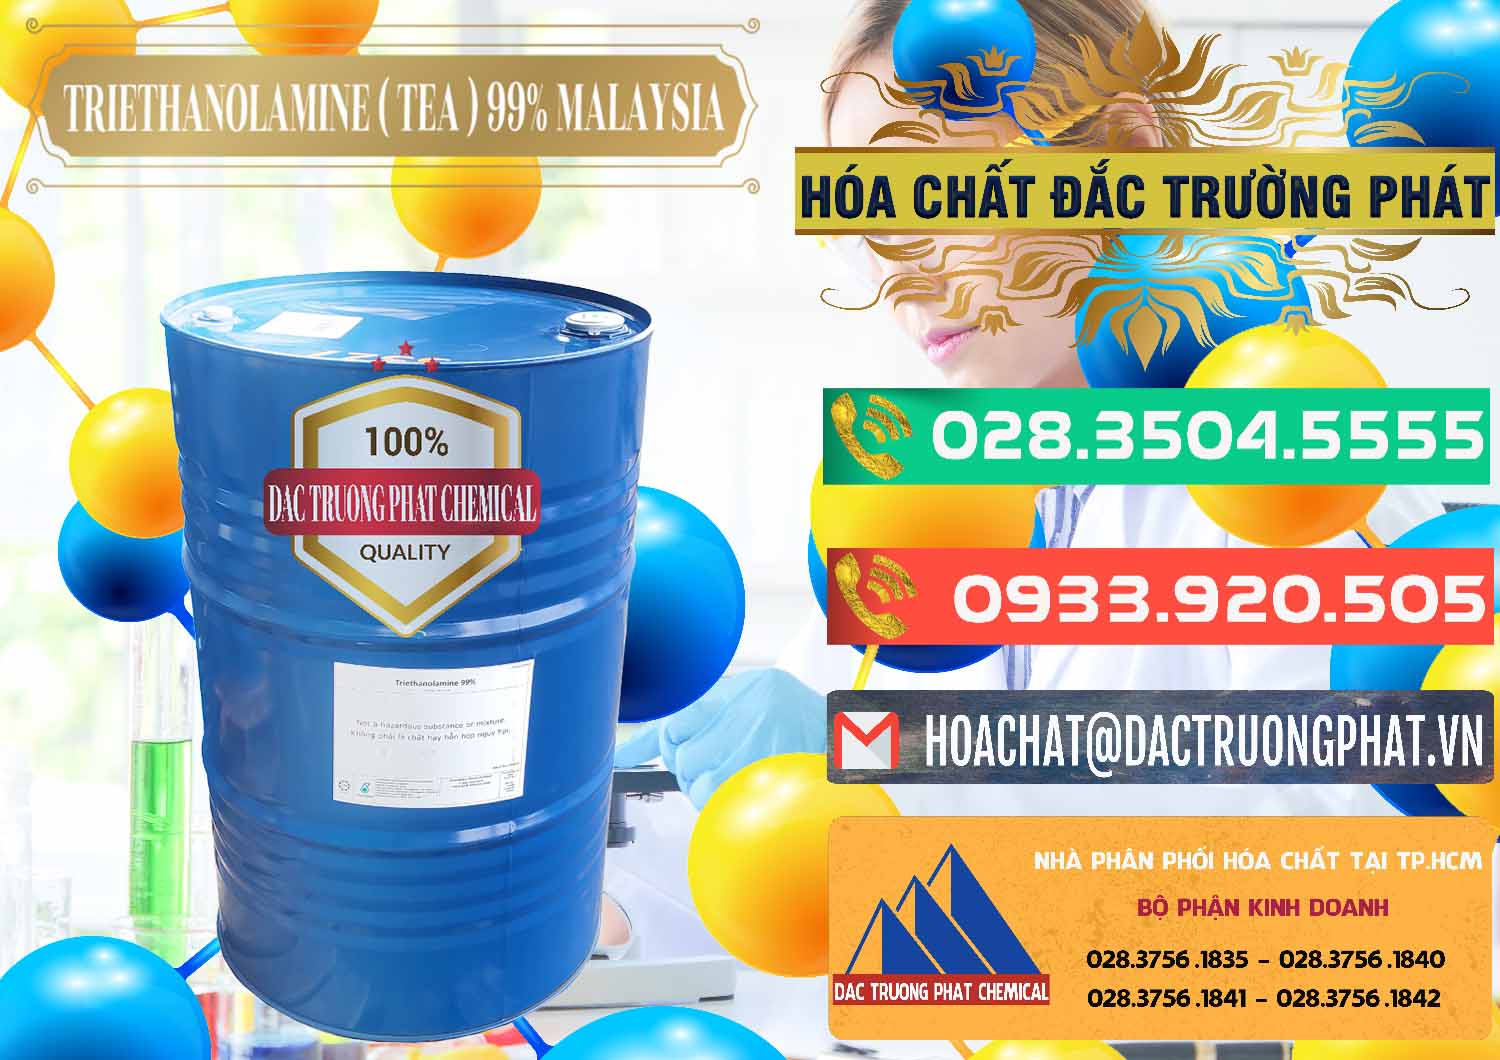 Công ty chuyên bán _ cung ứng TEA - Triethanolamine 99% Mã Lai Malaysia - 0323 - Công ty chuyên kinh doanh _ cung cấp hóa chất tại TP.HCM - congtyhoachat.com.vn